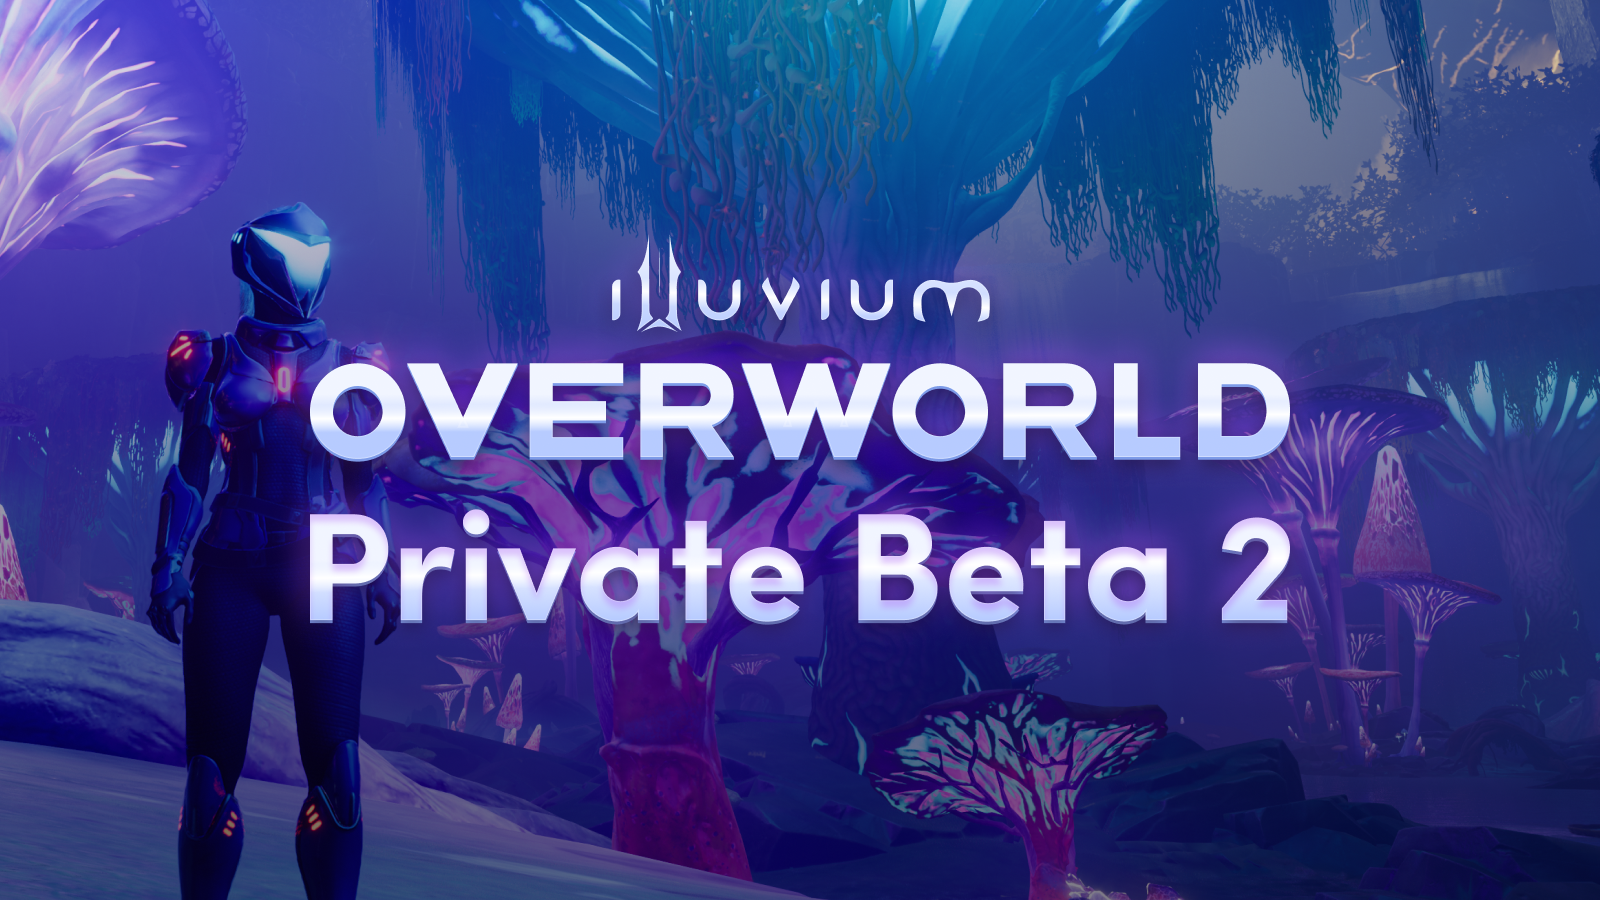 Introducing Overworld Private Beta 2 of Illuvium